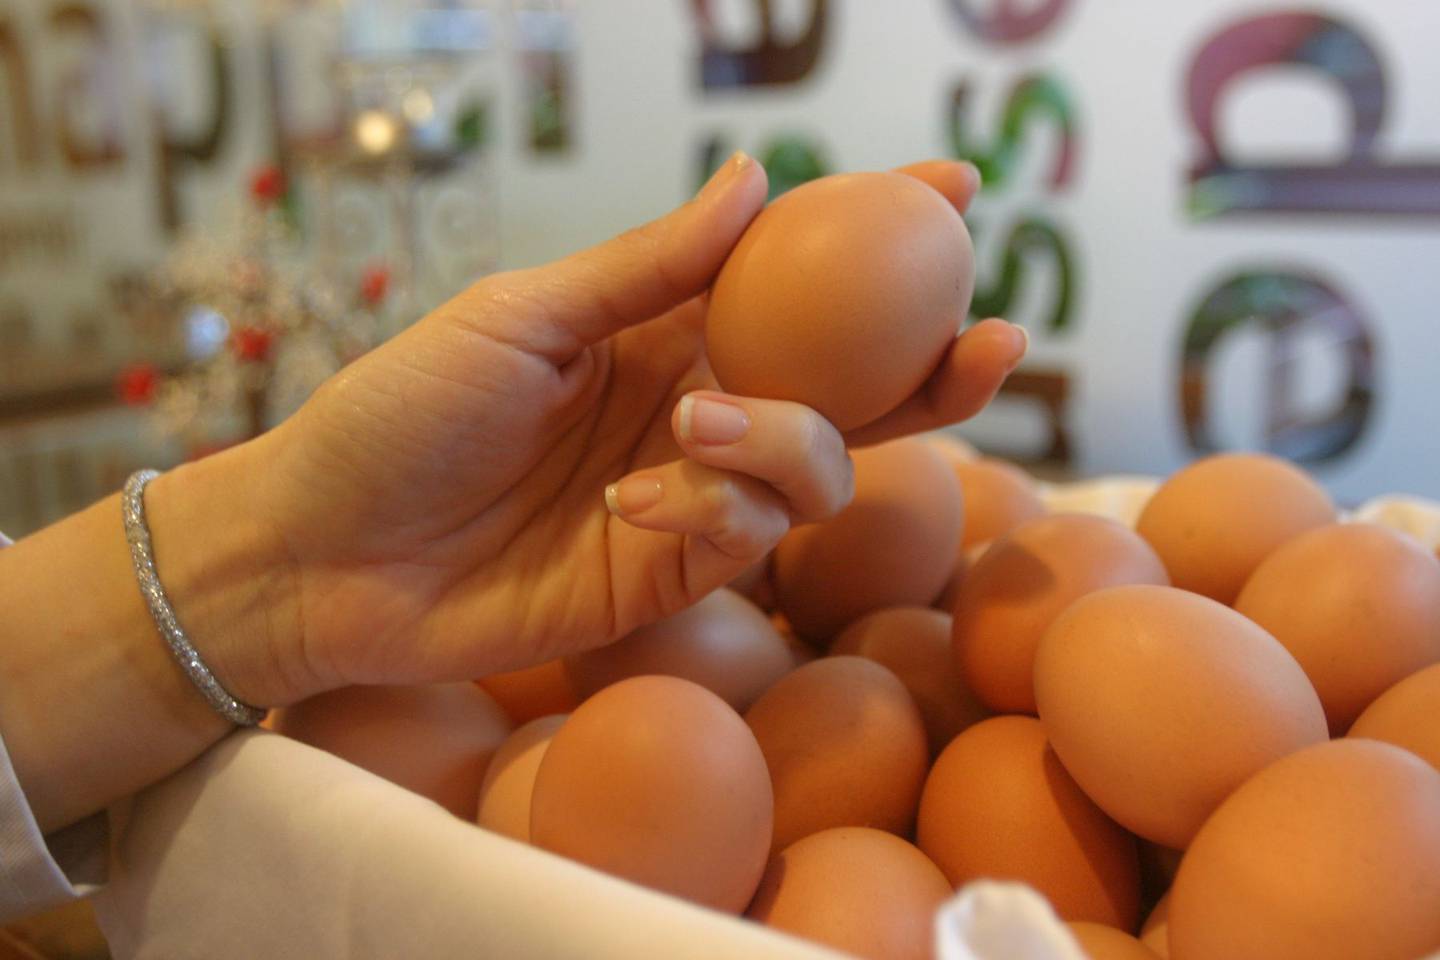 El Ministerio de Agricultura resalta que en 2021 el consumo per cápita de pollo fue de 79,49 por libra y de huevo el consumo fue de 42,77